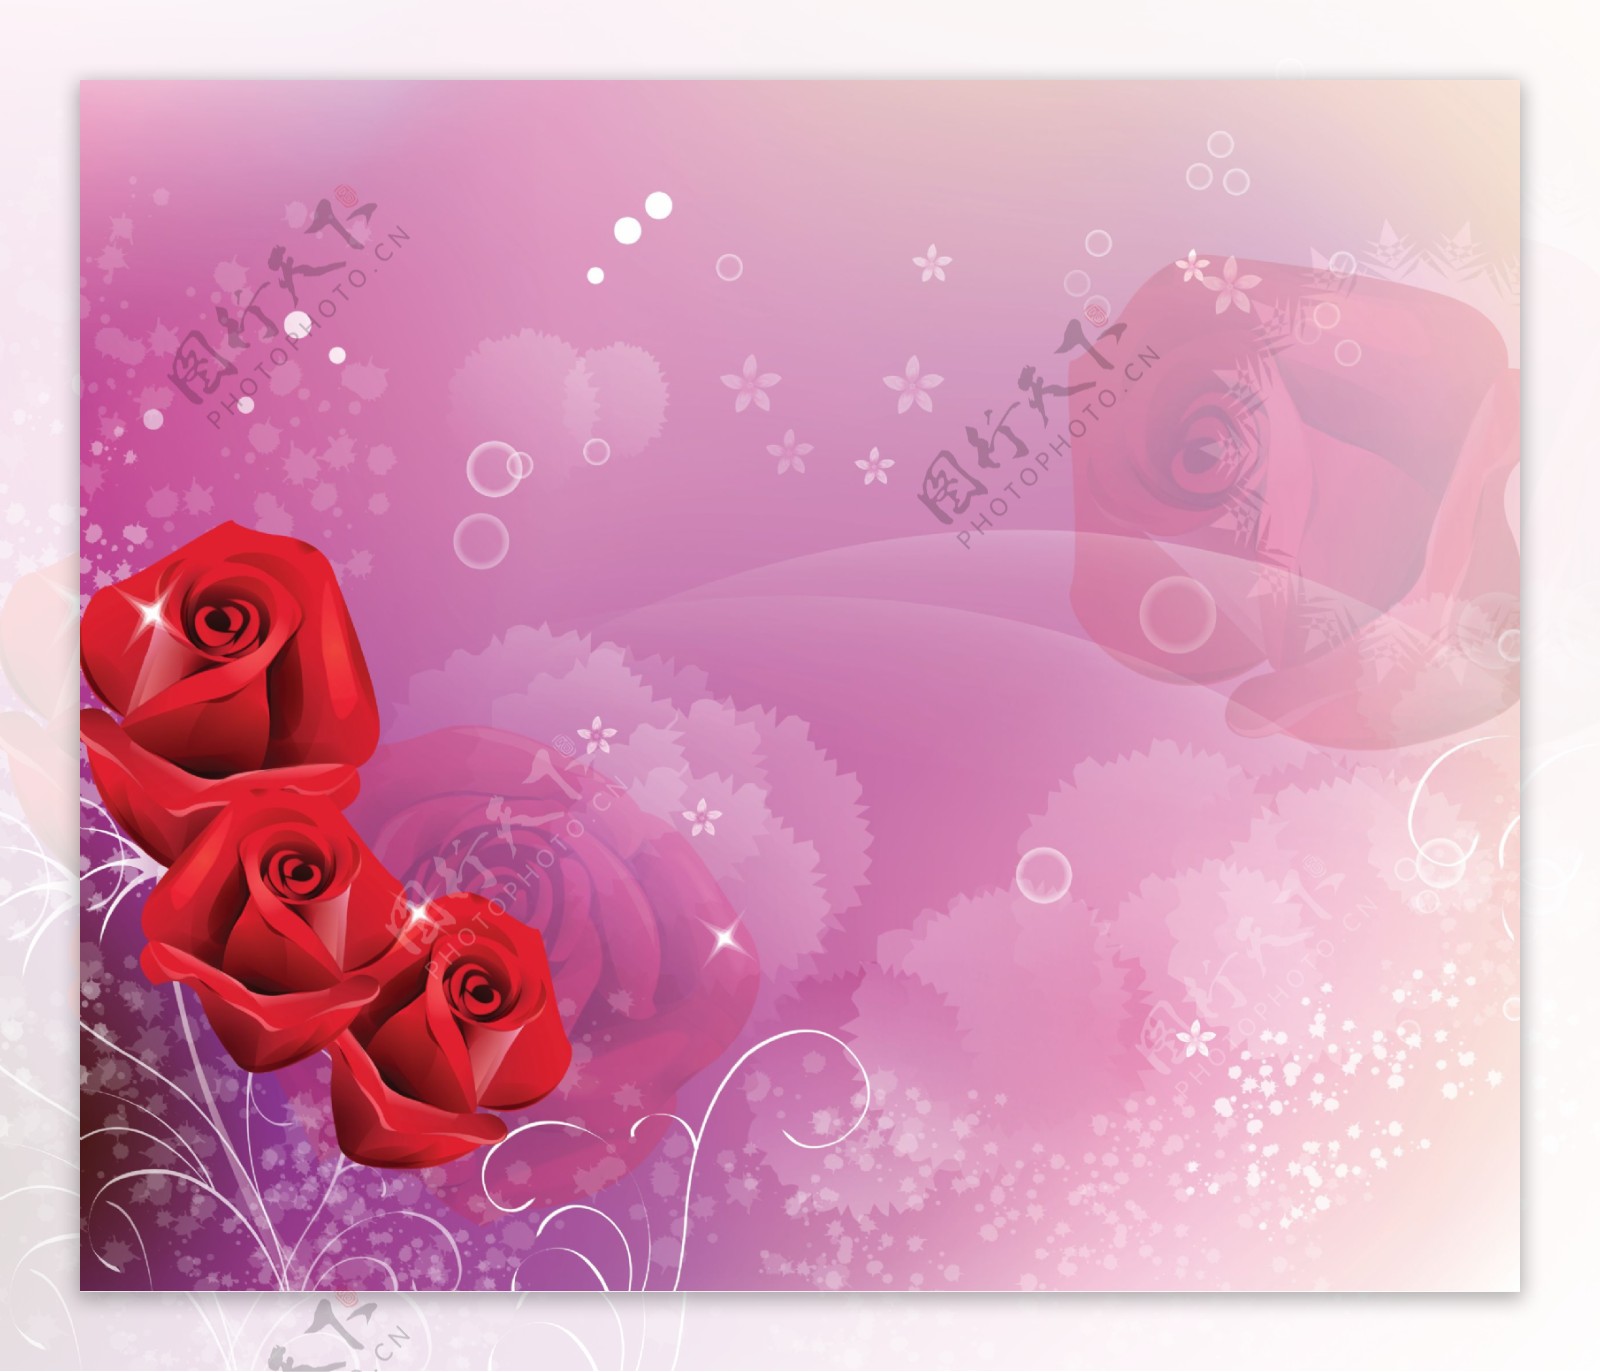 红色玫瑰装饰画素材